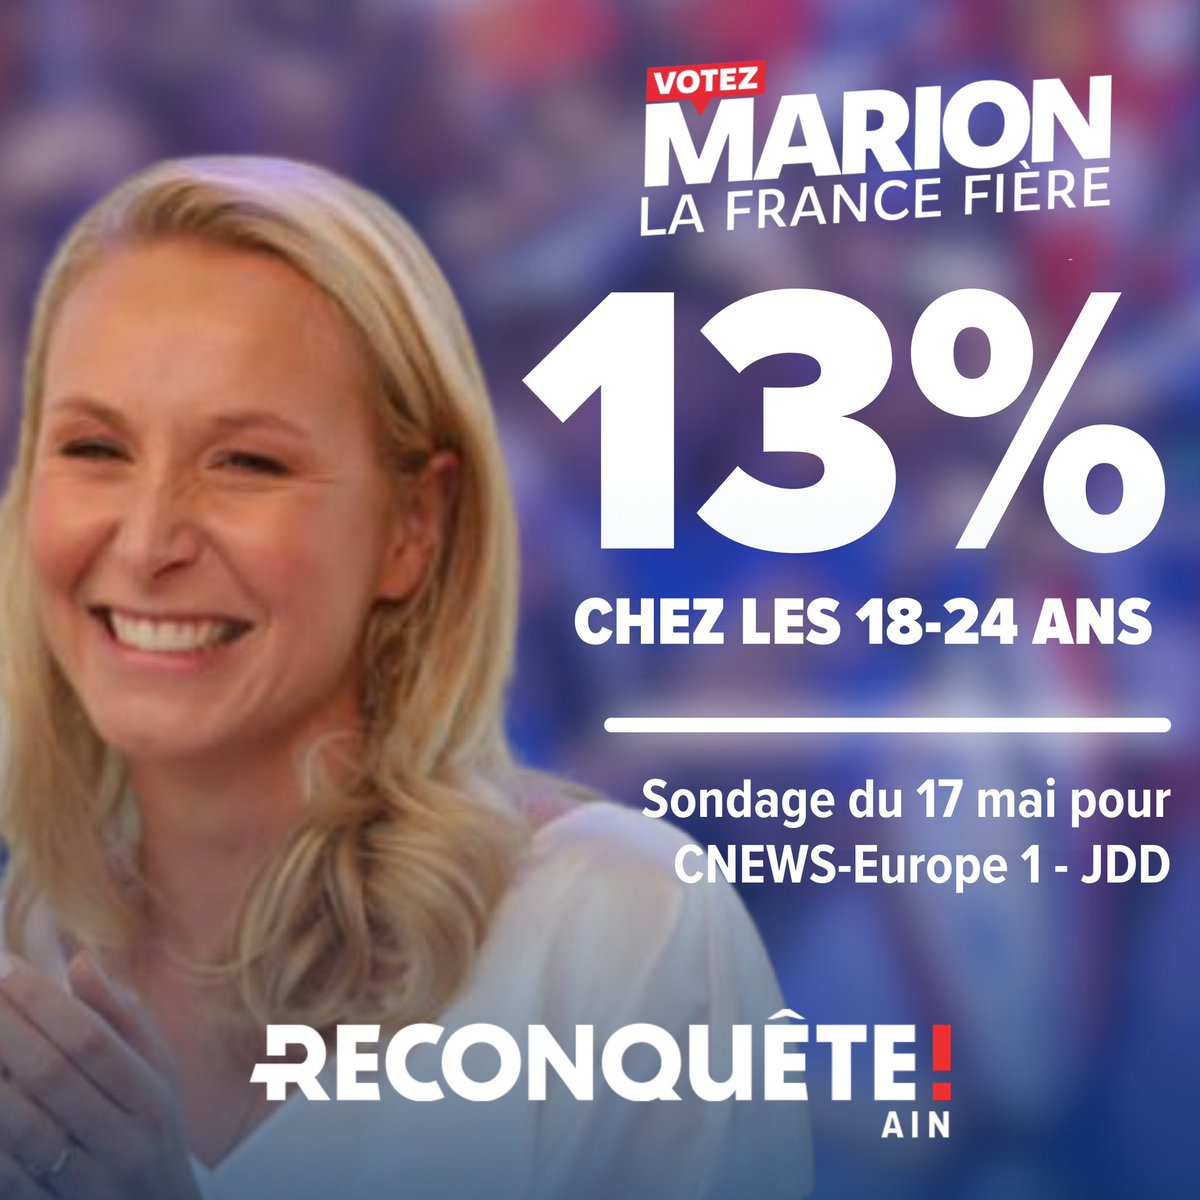 Grand sondage Opinion Way/Europe 1, Cnews & le JDD publié ce matin :

✅↗️ Marion Maréchal poursuit sa dynamique et se hisse à 13% chez les jeunes de 18-24 ans

❌↘️ LR & Bellamy en grande difficulté avec seulement 3% chez les 18-24 ans

#VotezMarion #Européennes2024